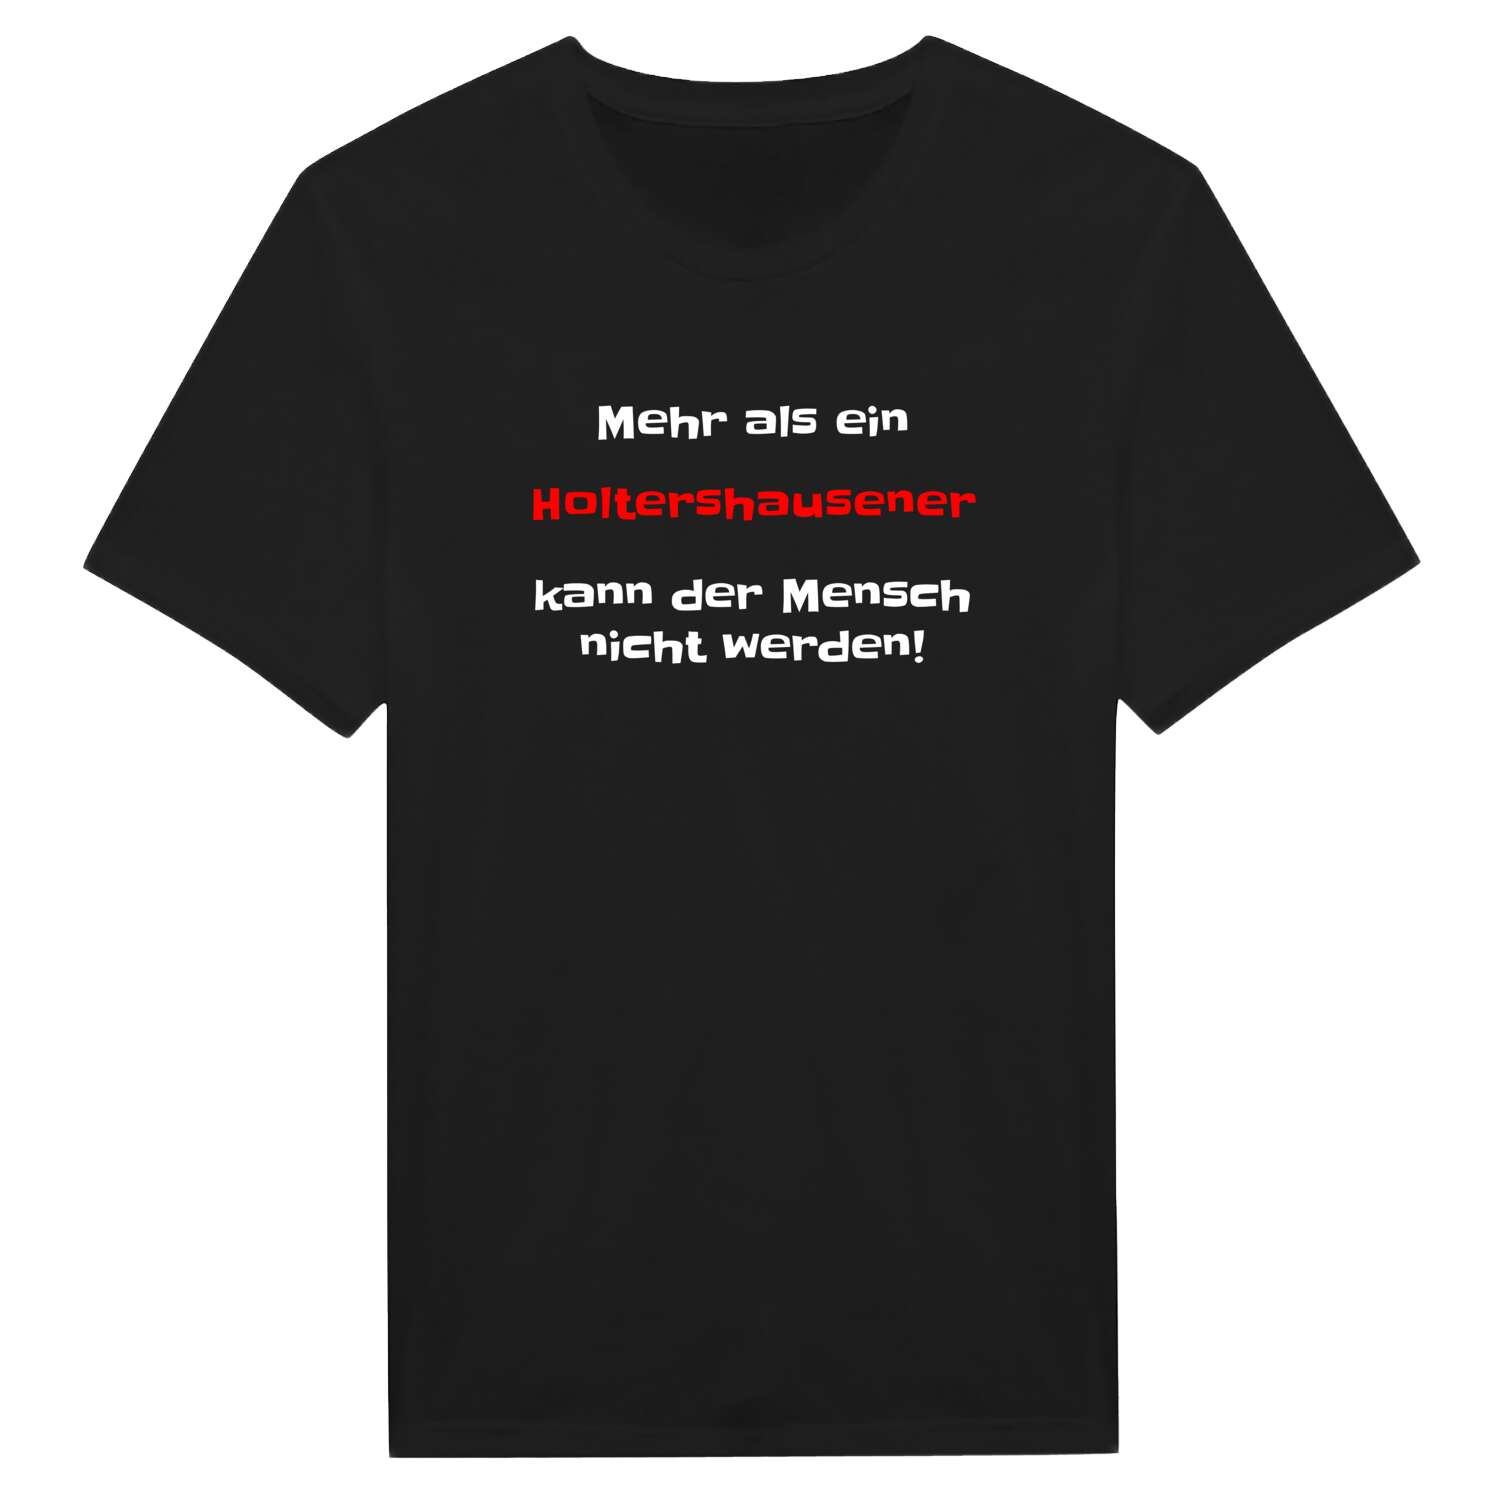 Holtershausen T-Shirt »Mehr als ein«